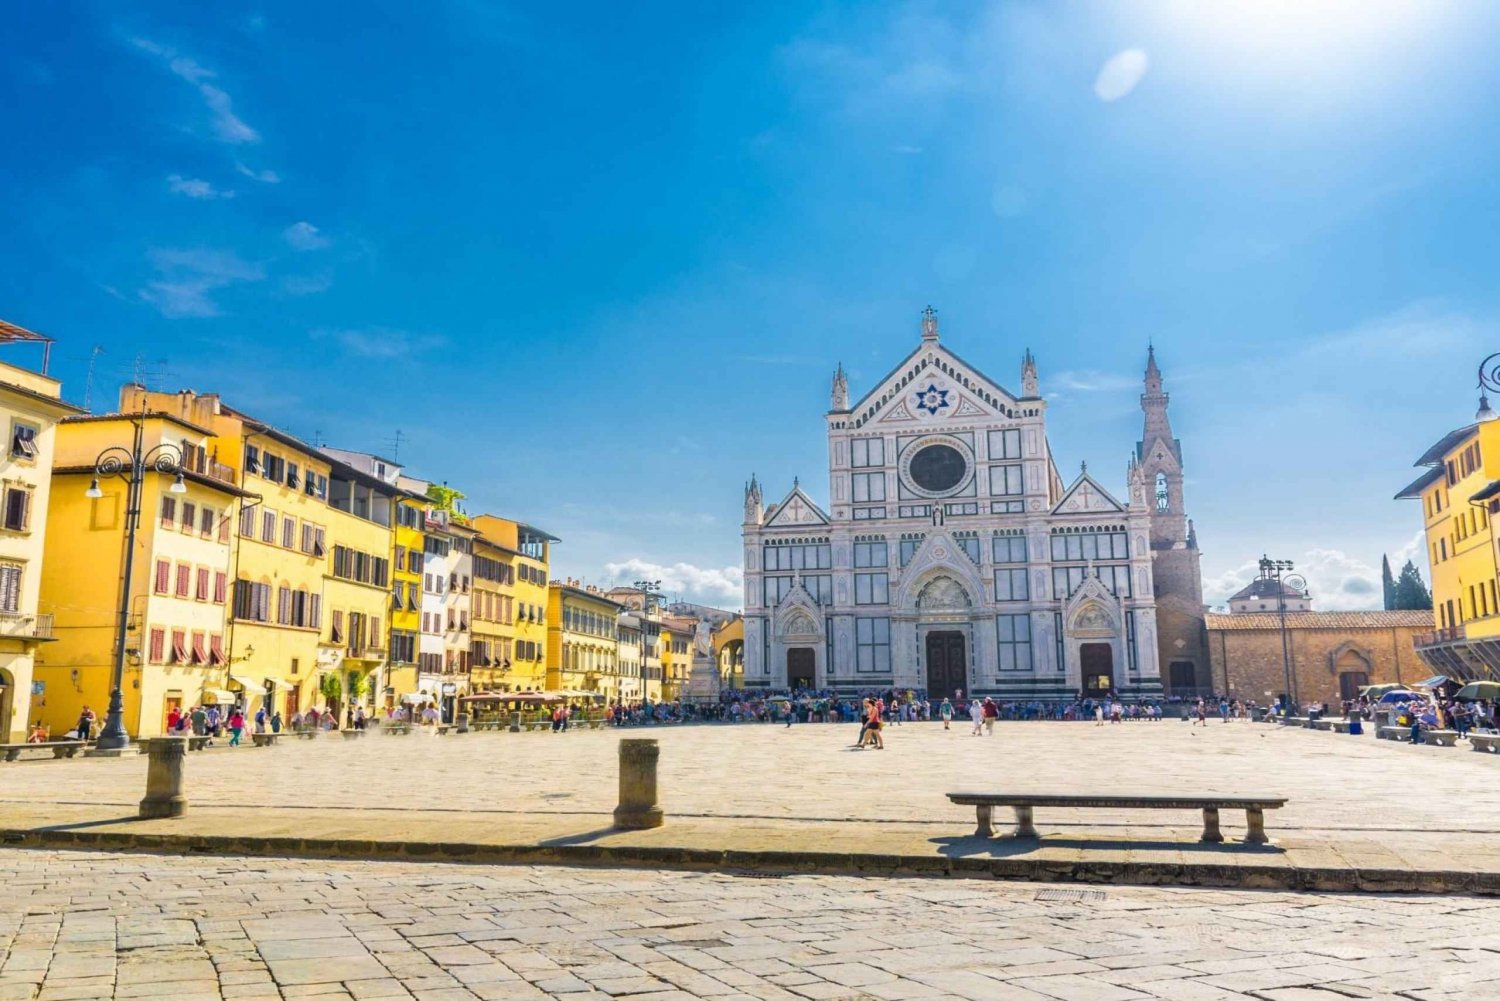 Visite du Dôme de Florence avec la vieille ville et Santa Croce